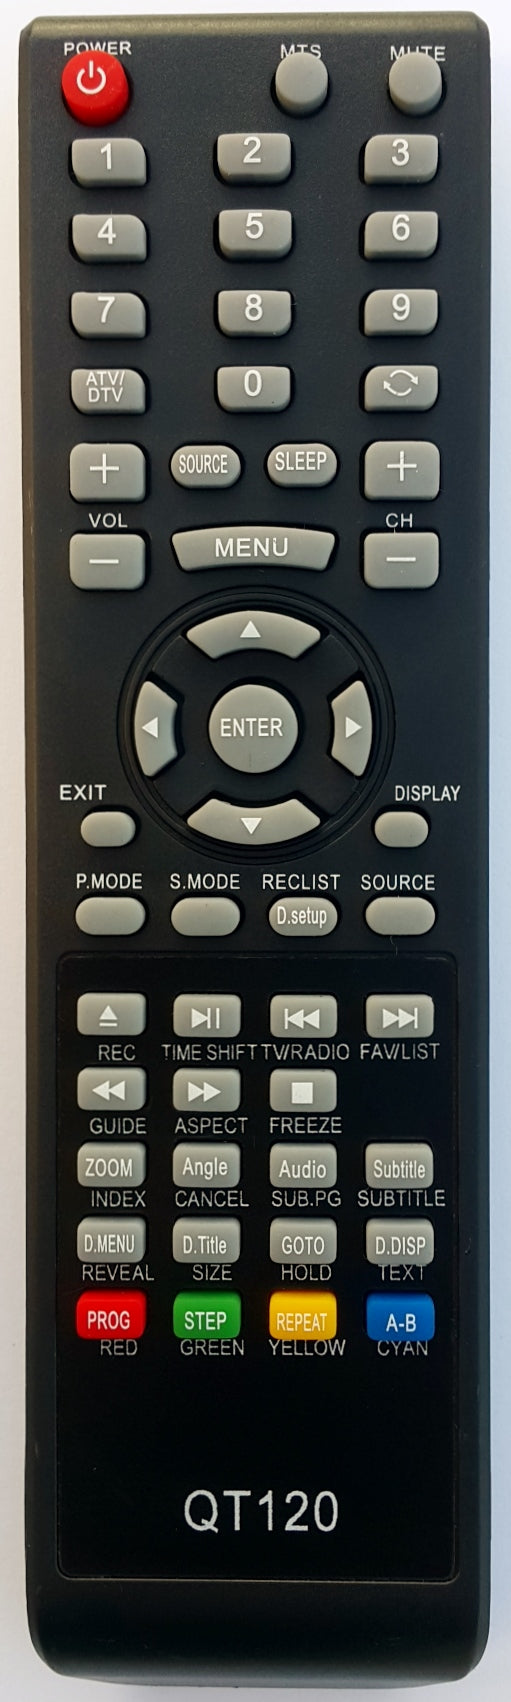 Soniq TV Replacement Remote Control  QT-120